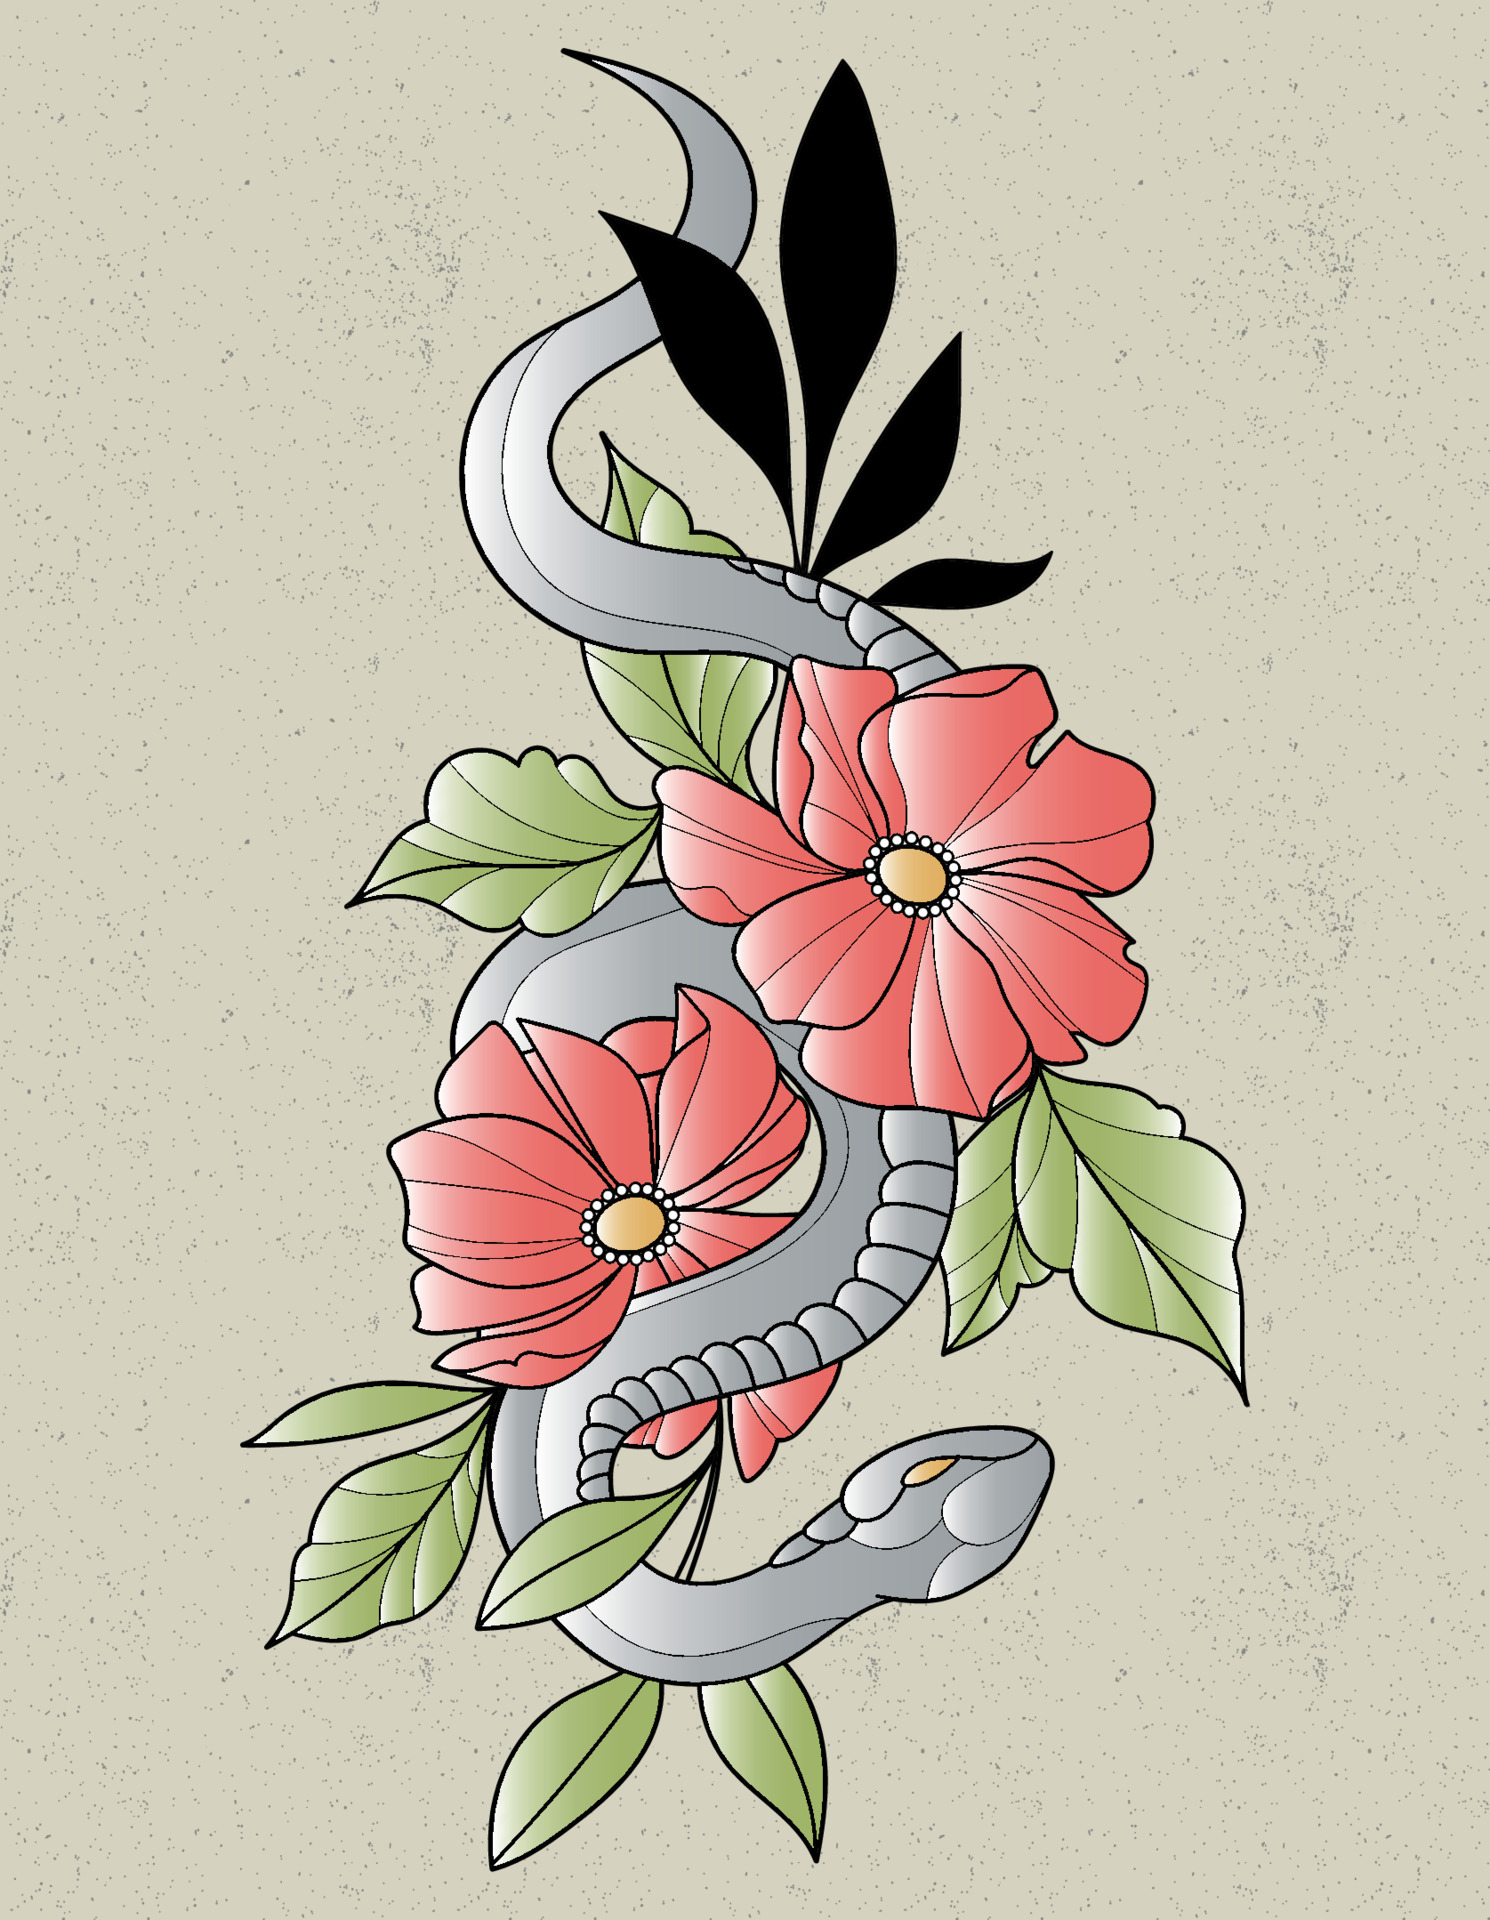 marton koblo on Twitter snake and peonies snake peony Japanese  japanesetattoo tattoo tattoos httpstcoVNhp9ALuI7  Twitter